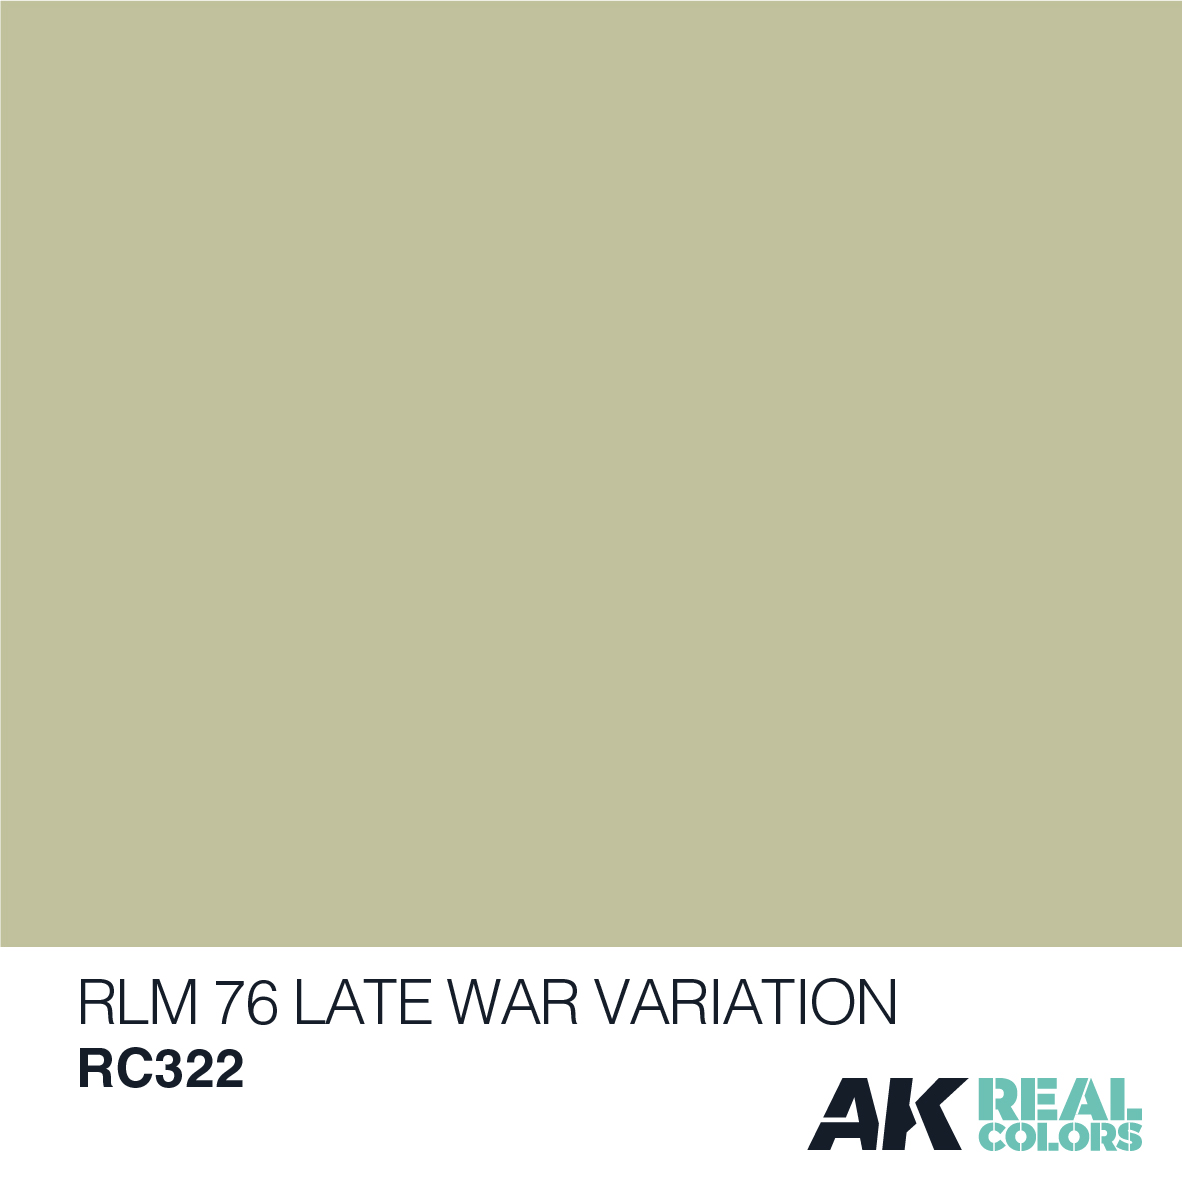 RLM 76 Late War Variation